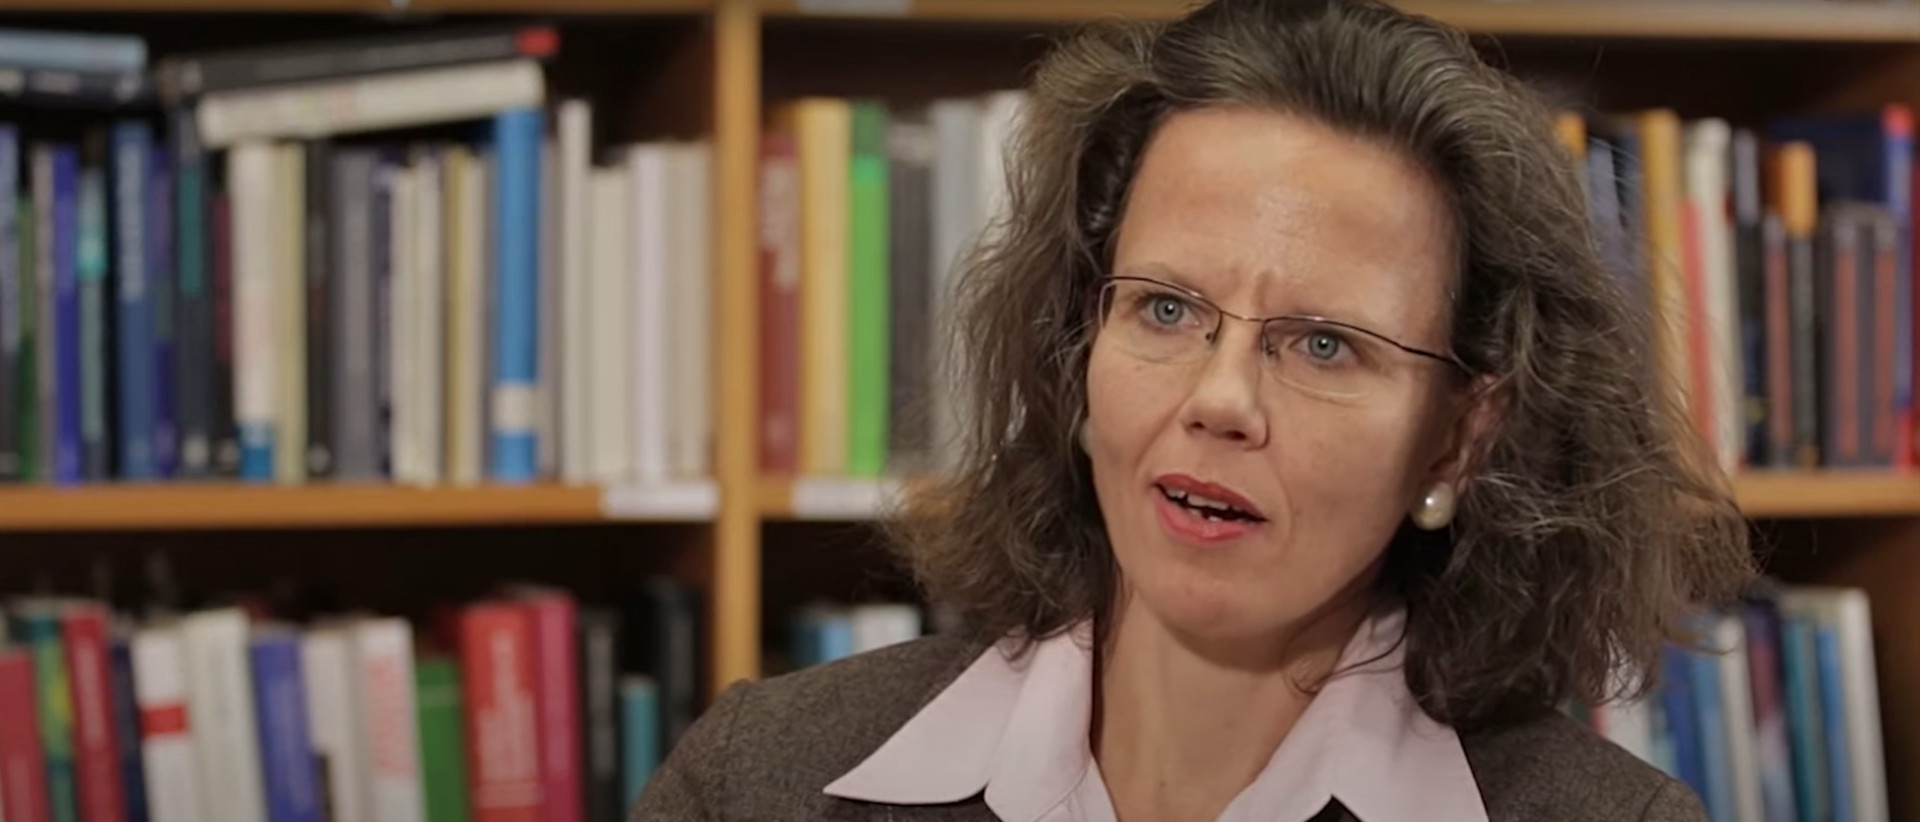 Susanne Kummer, directrice de l'institut de bioéthique IMABE, ne souscrit pas à la politique suisse en matière de suicide assisté | capture d'écran YouTube
